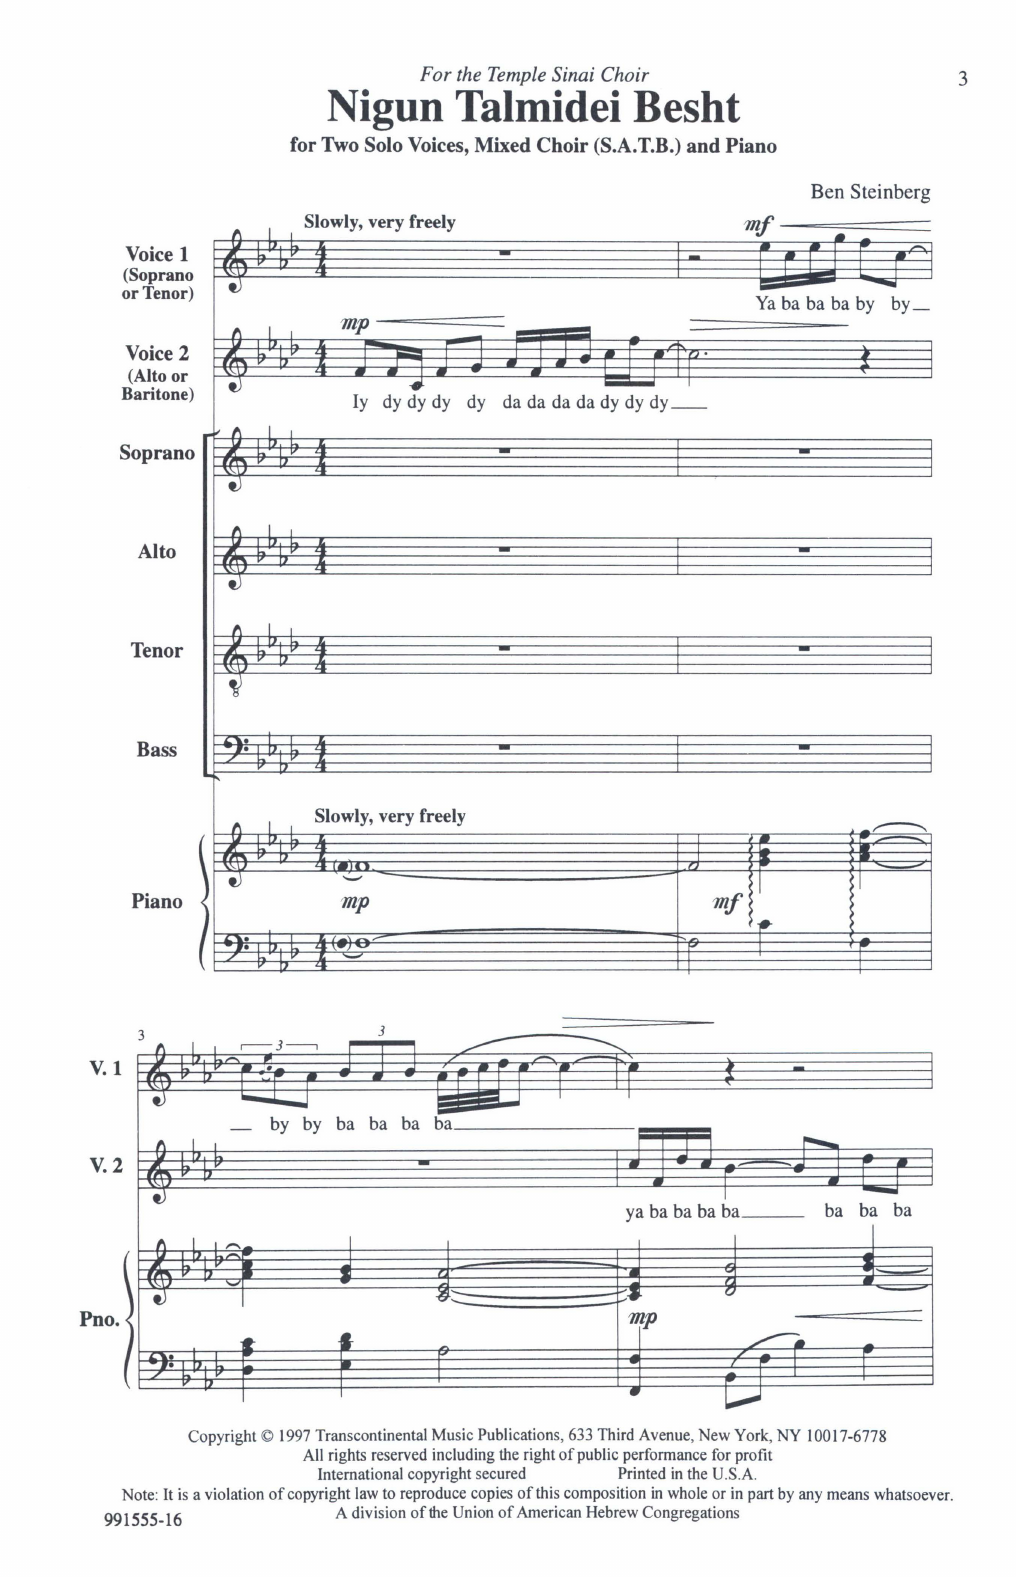 Ben Steinberg Nigun Talmidei Besht sheet music notes and chords arranged for SATB Choir